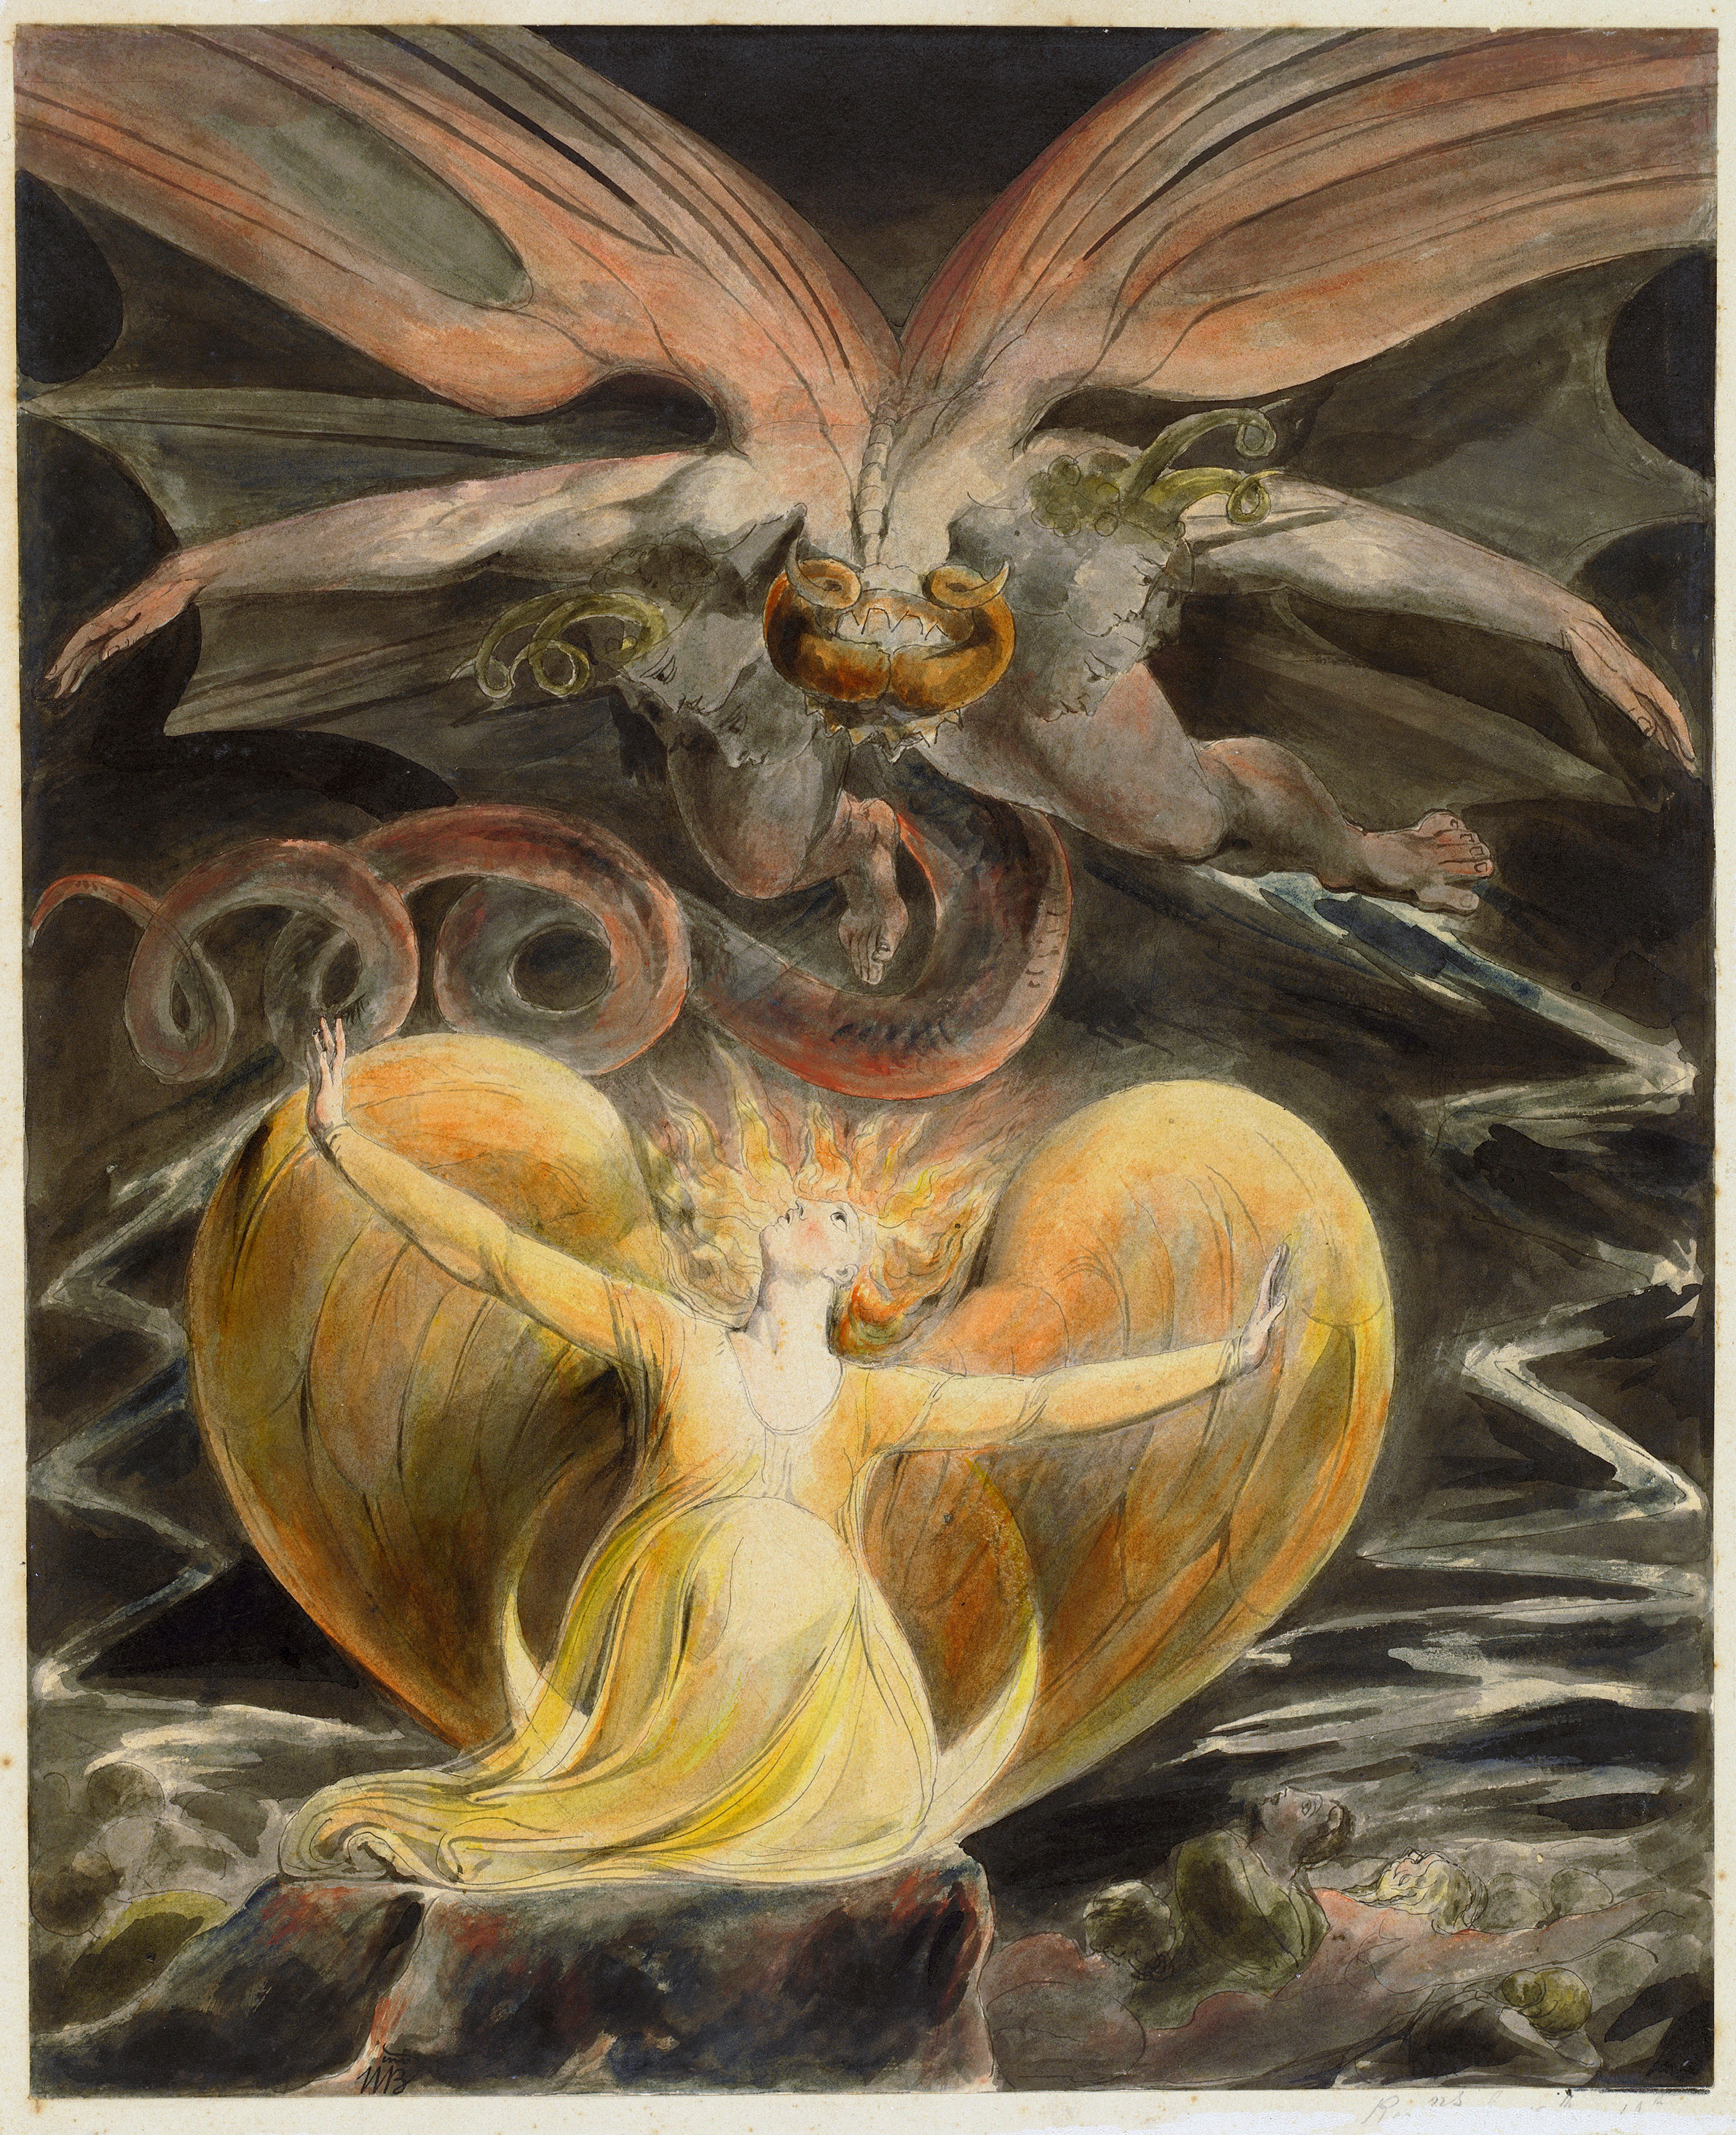 El Gran Dragón Rojo y la Mujer Vestida del Sol by William Blake - 1805 National Gallery of Art